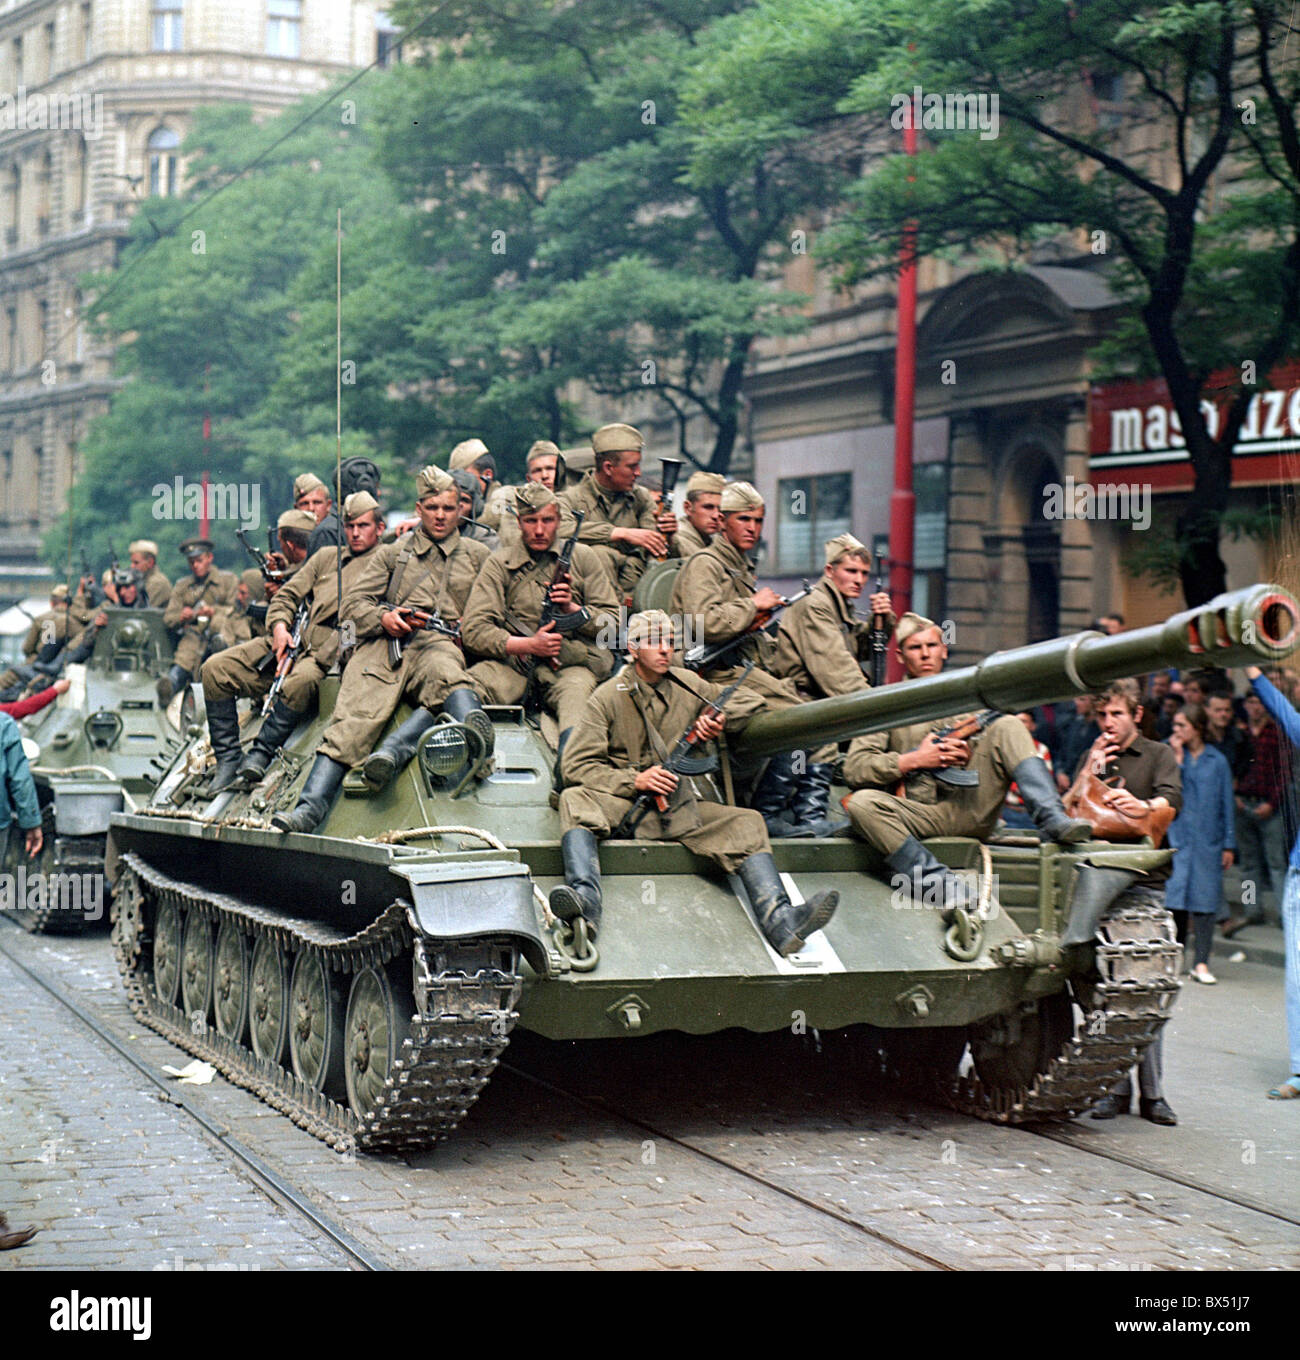 soviet-tank-troops-soldiers-prague-BX51J7.jpg